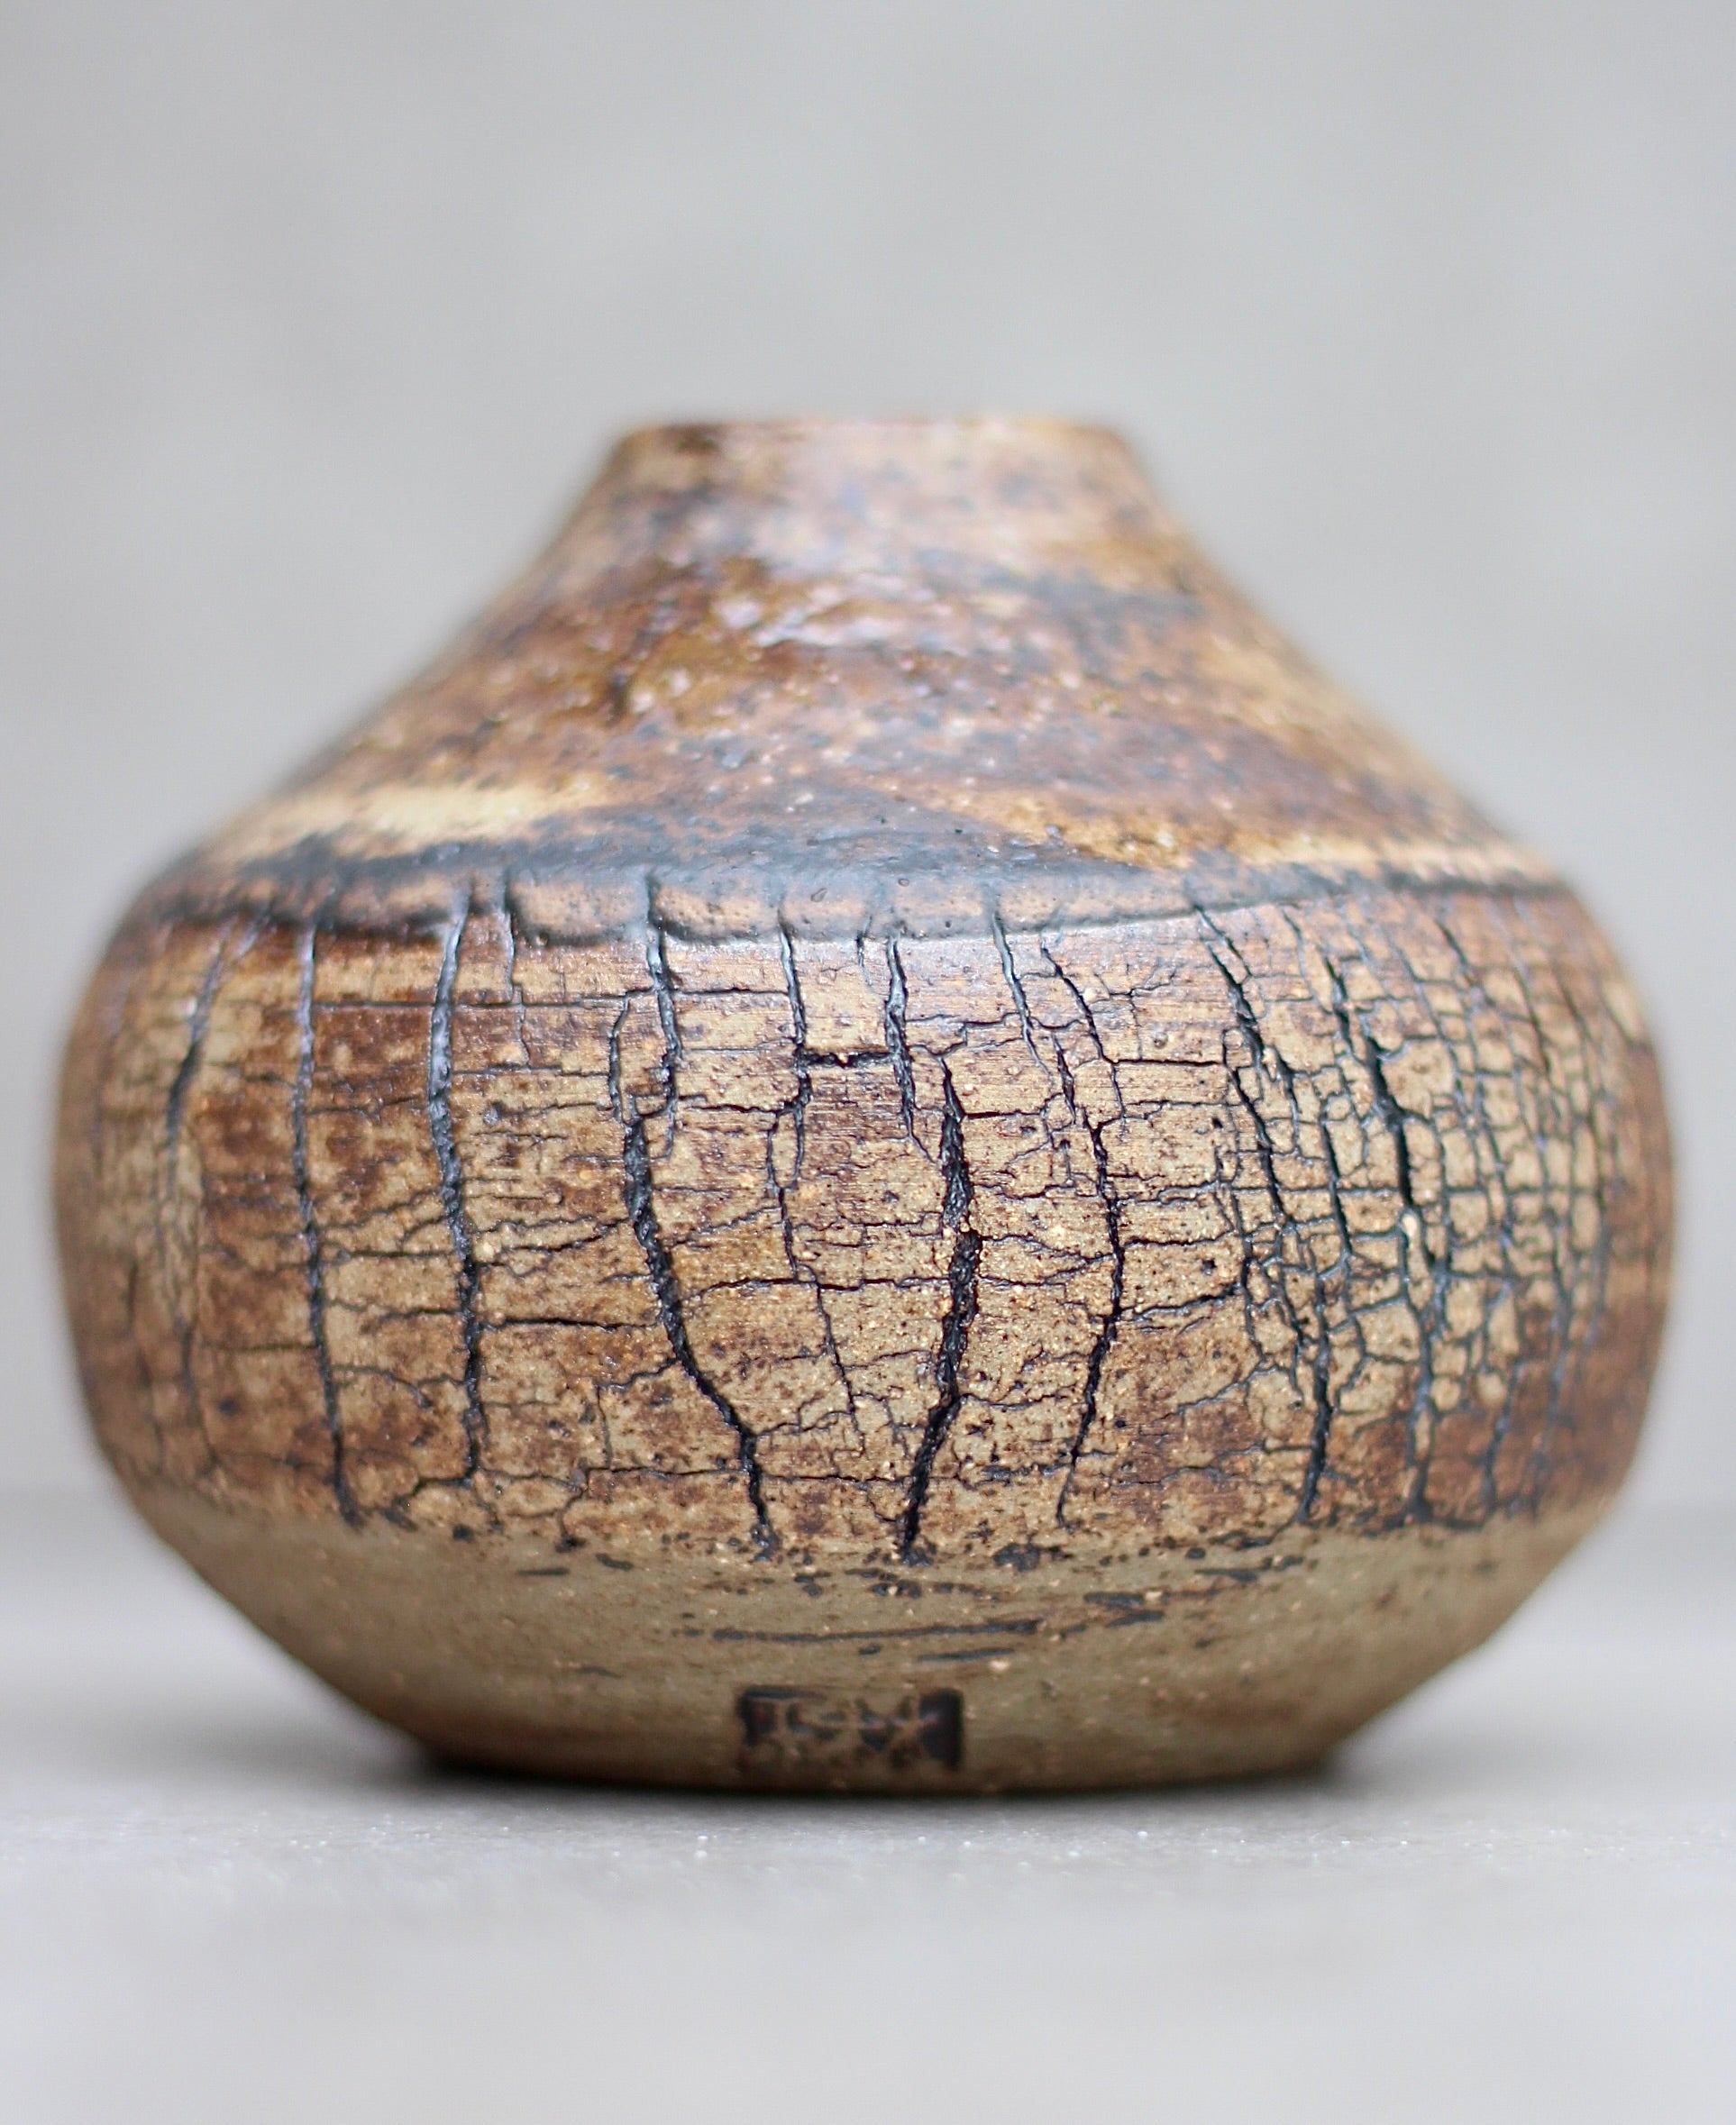 Bark Bud Vase with wood ash